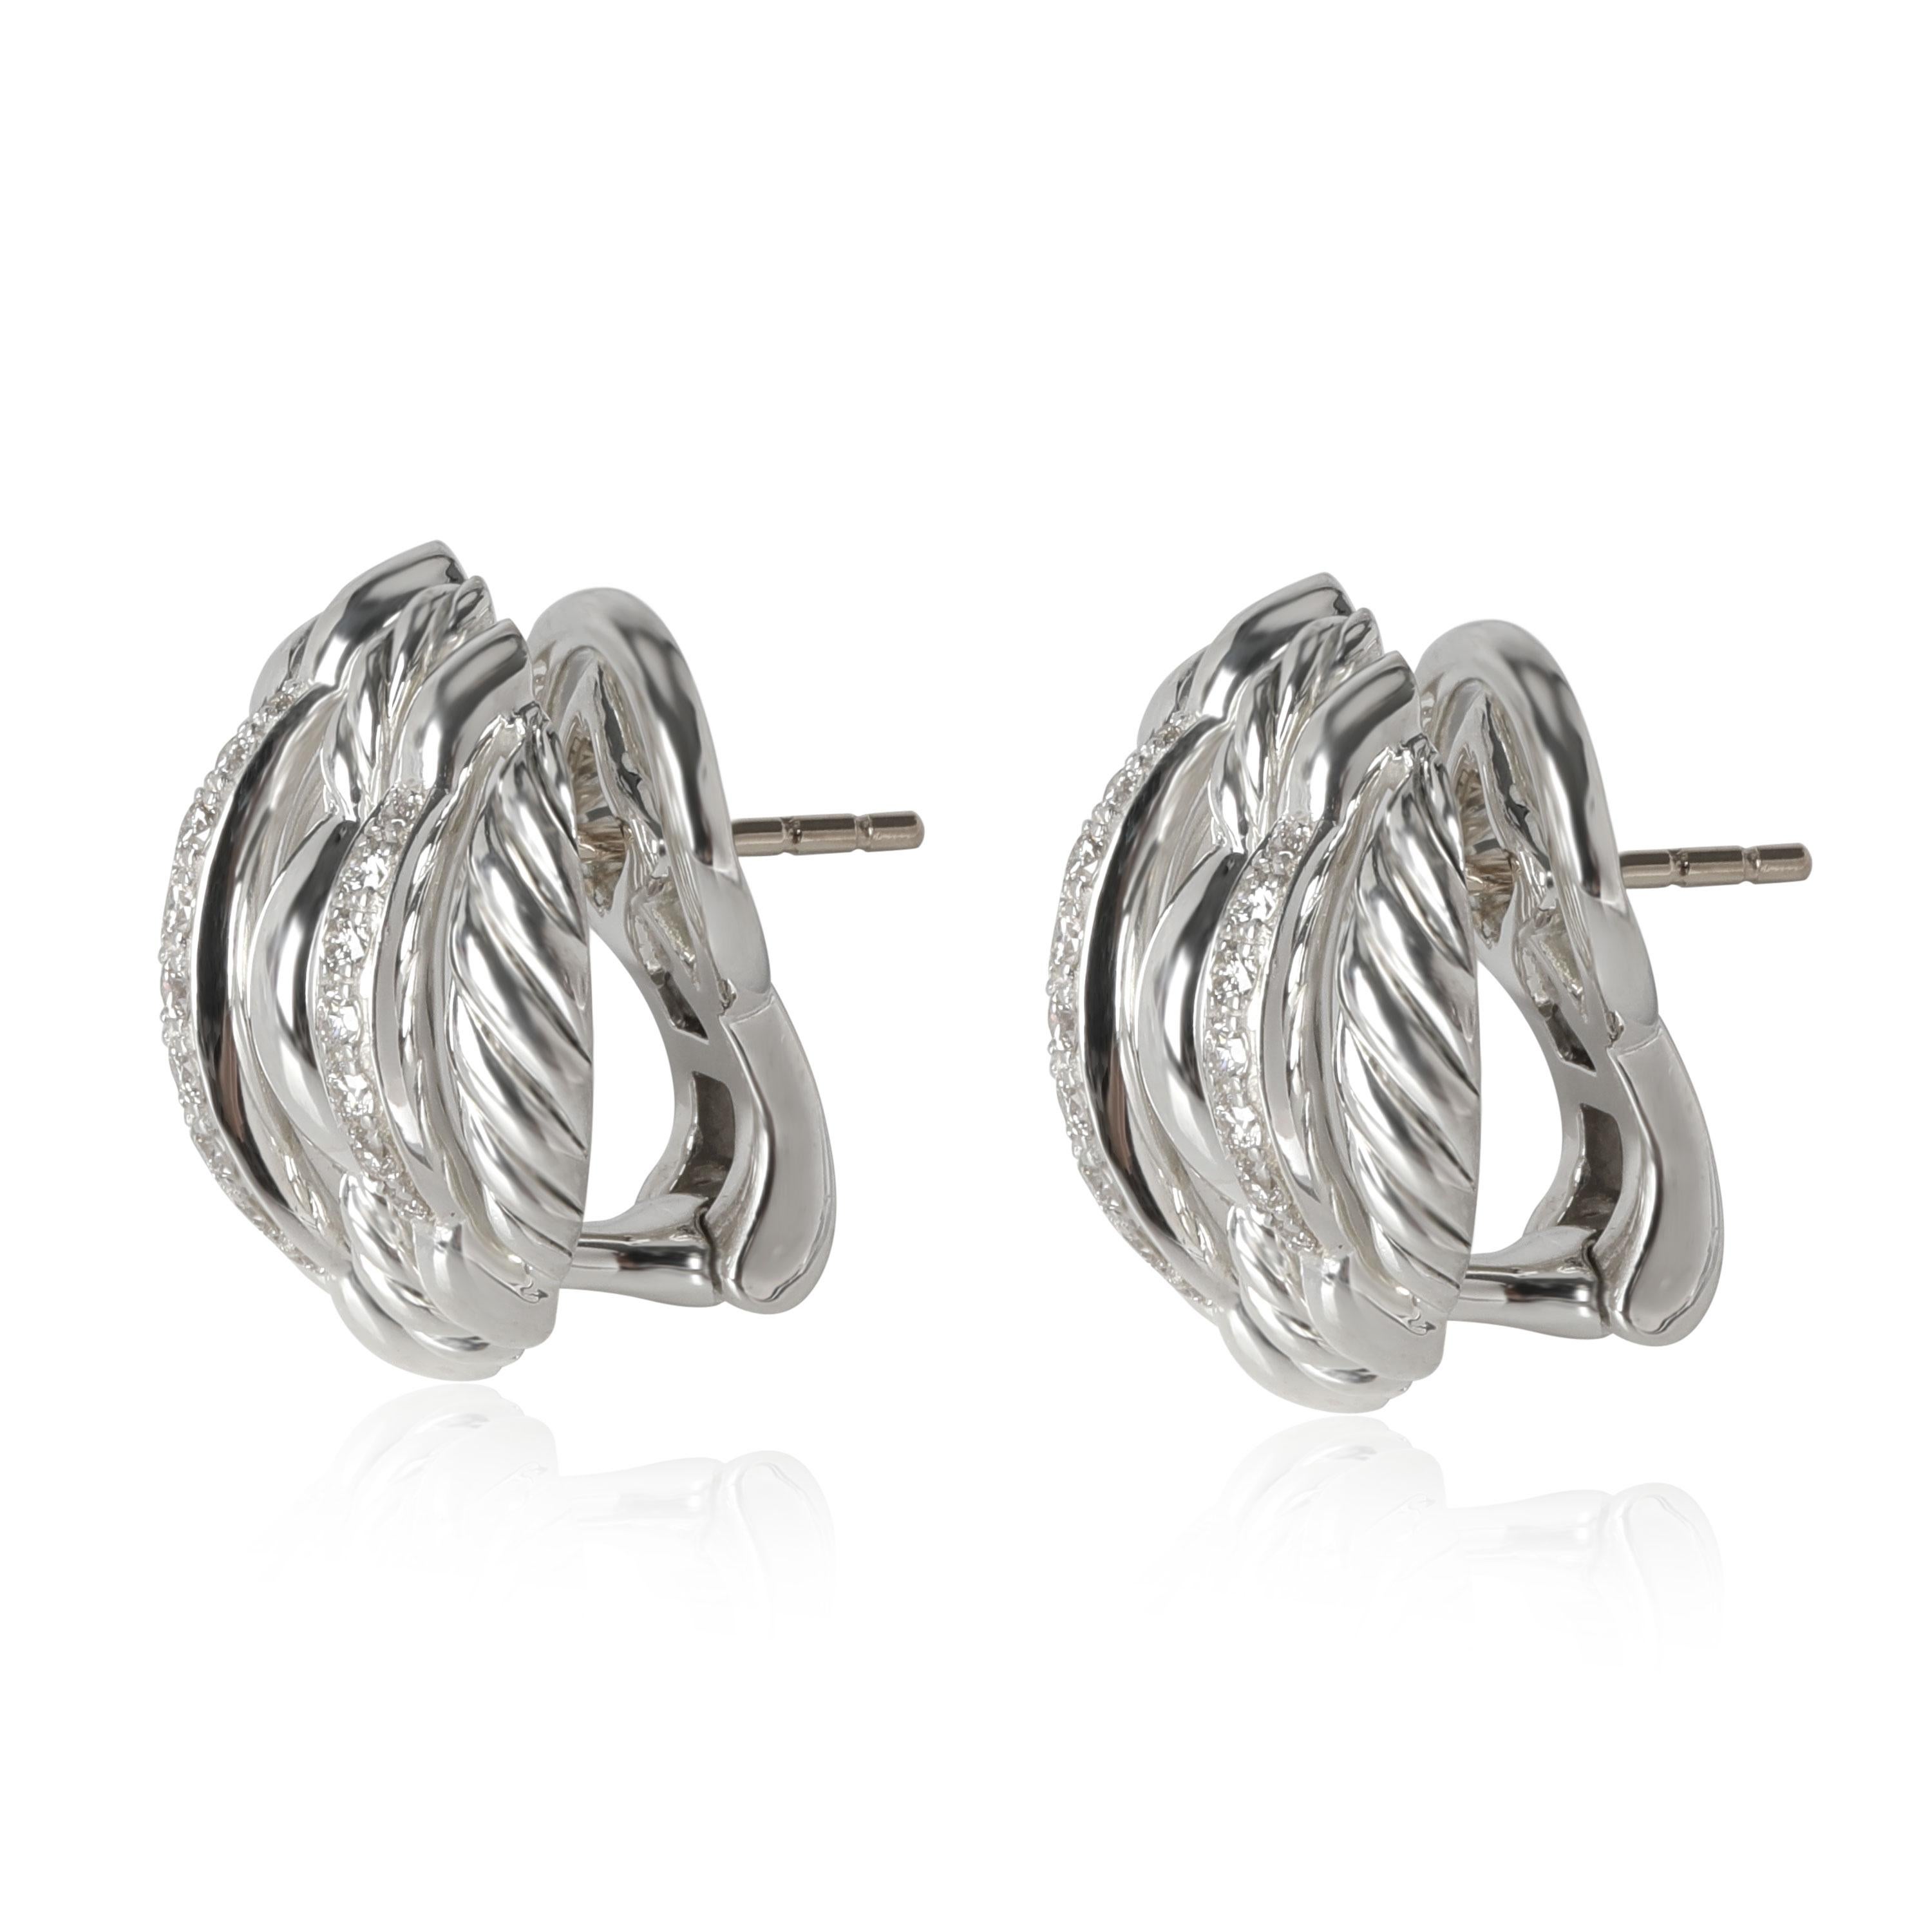 Women's David Yurman Tides Diamond Earrings in Sterling Silver 0.54 CTW